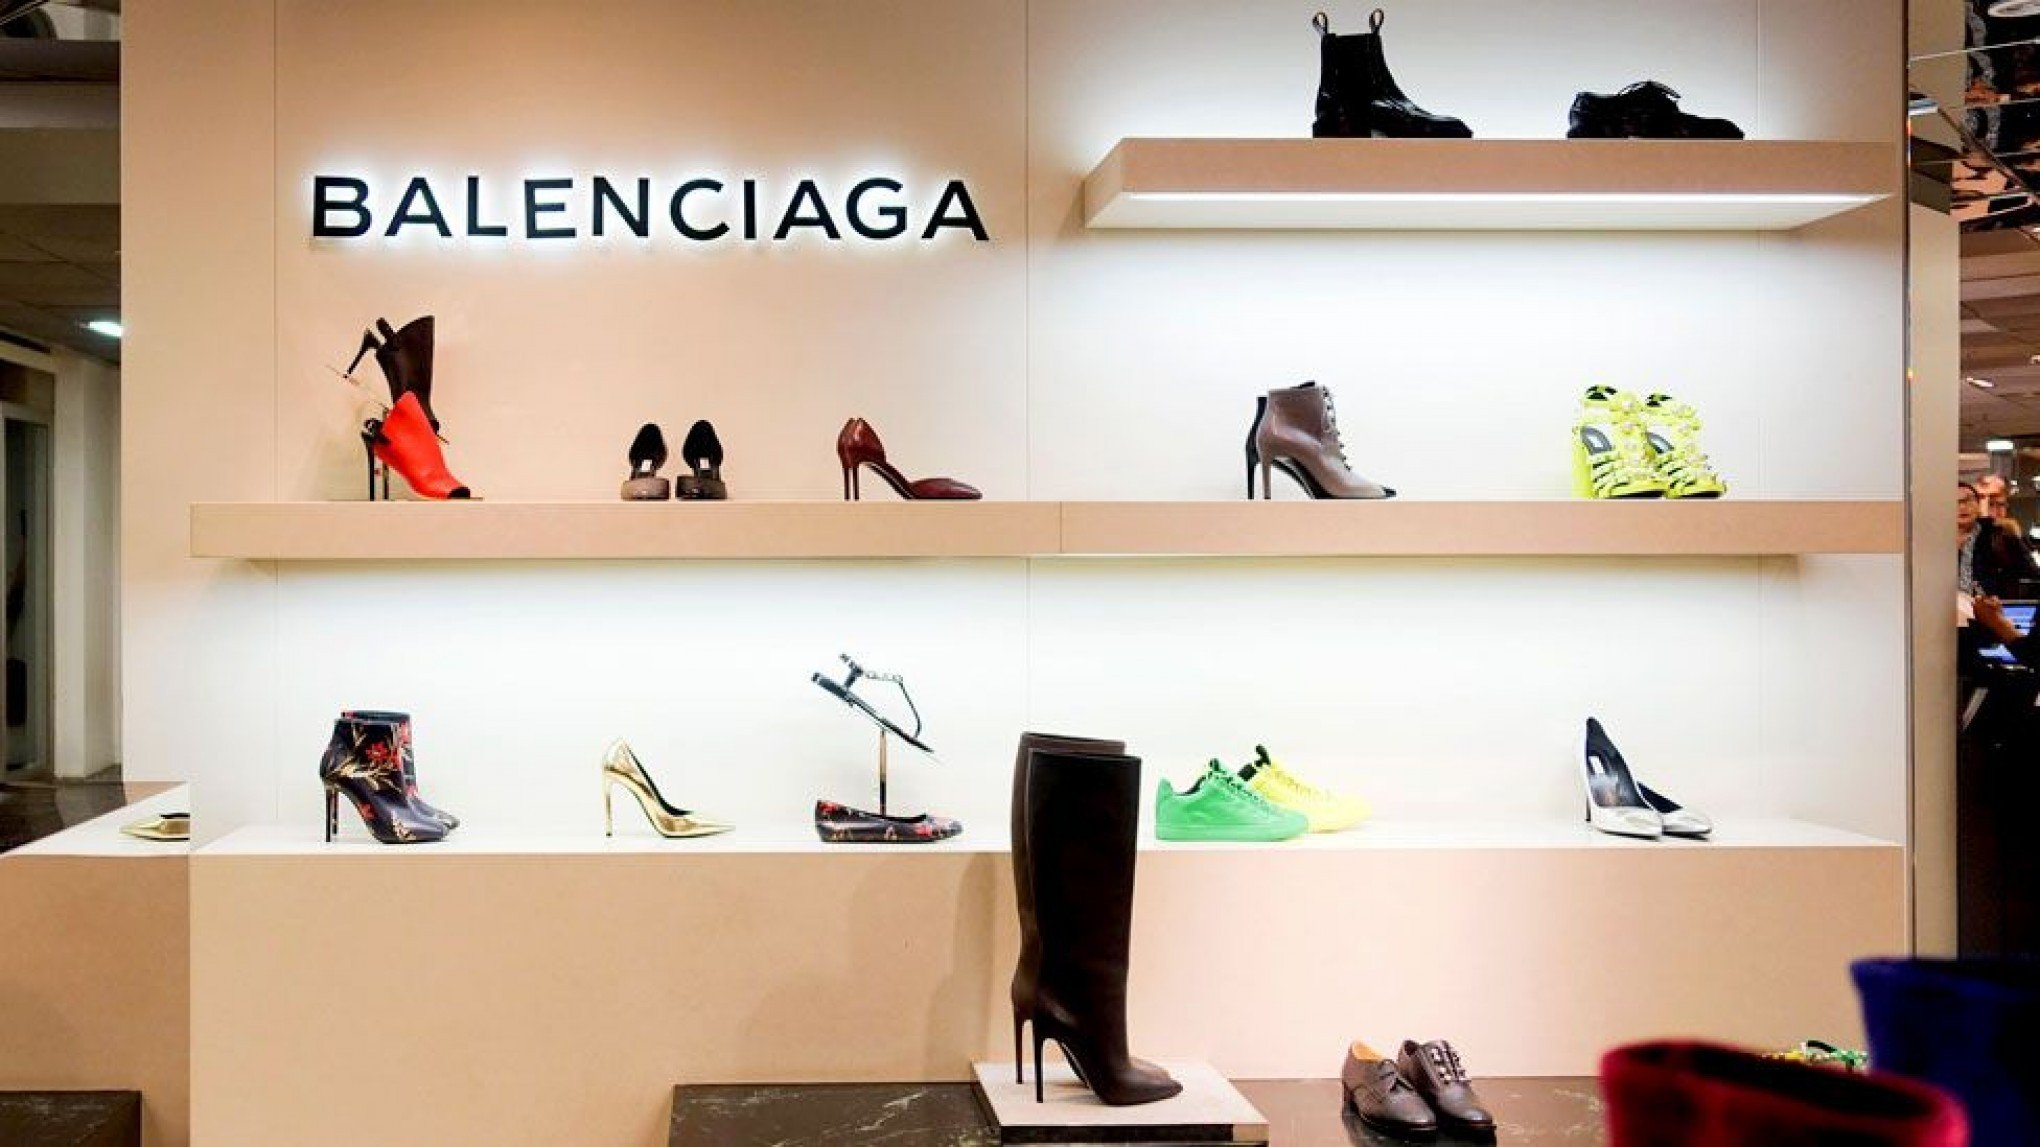 Balenciaga abre primeira loja no Brasil